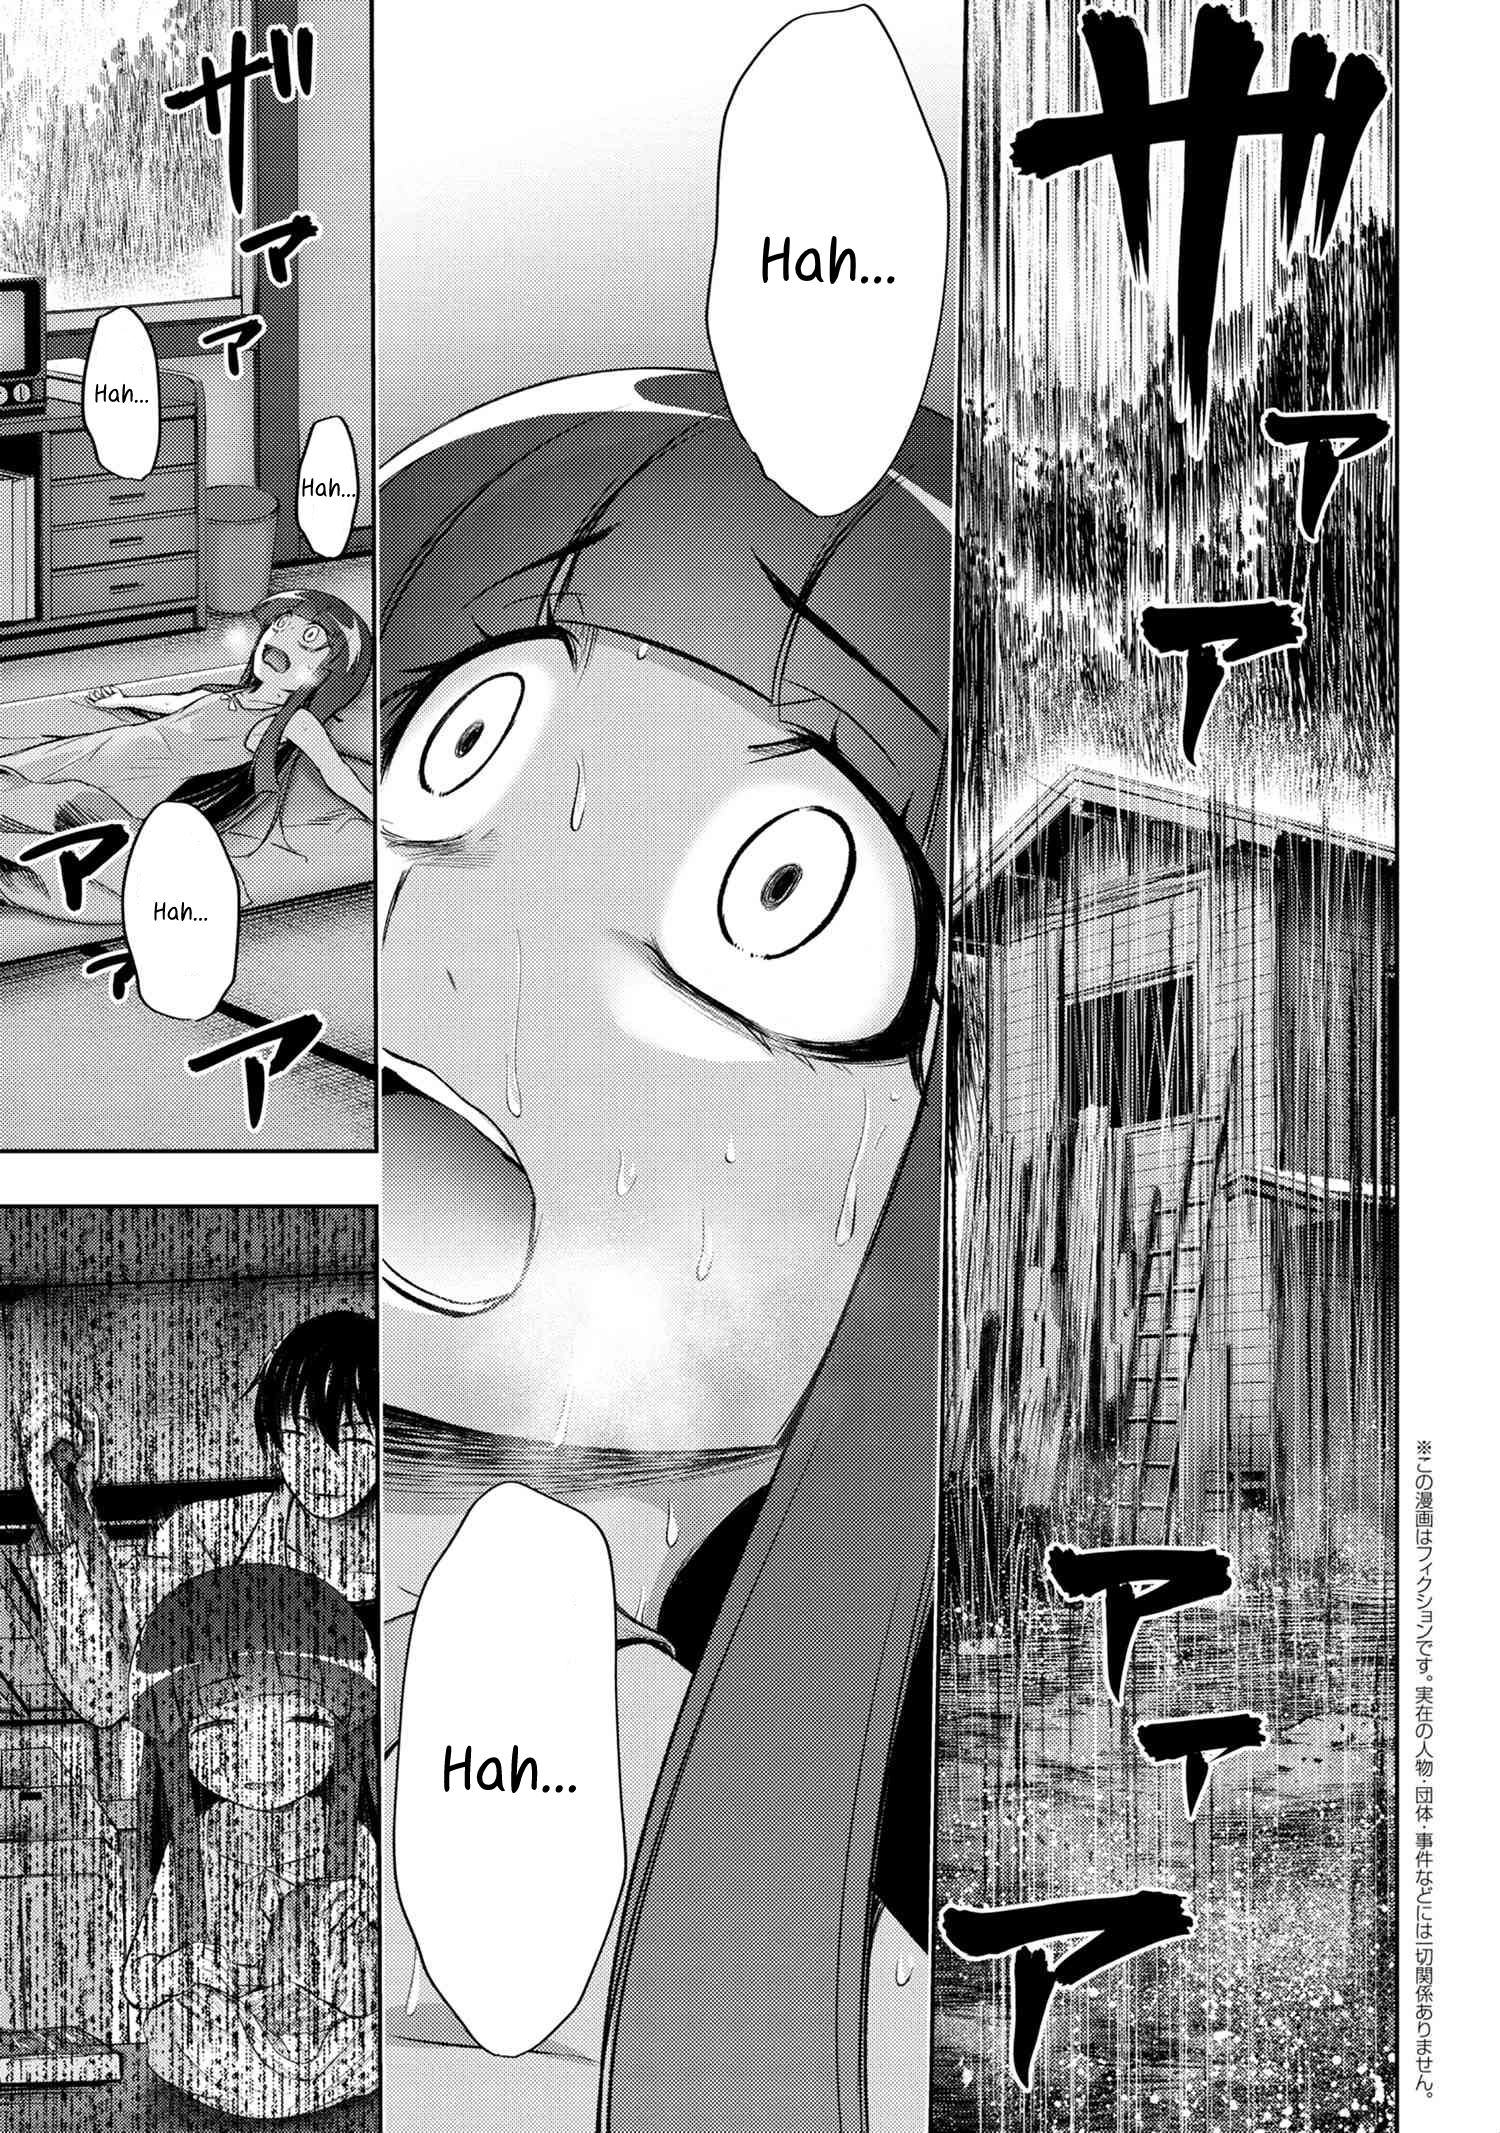 Higurashi no Naku Koro ni Gou Manga Volume 1